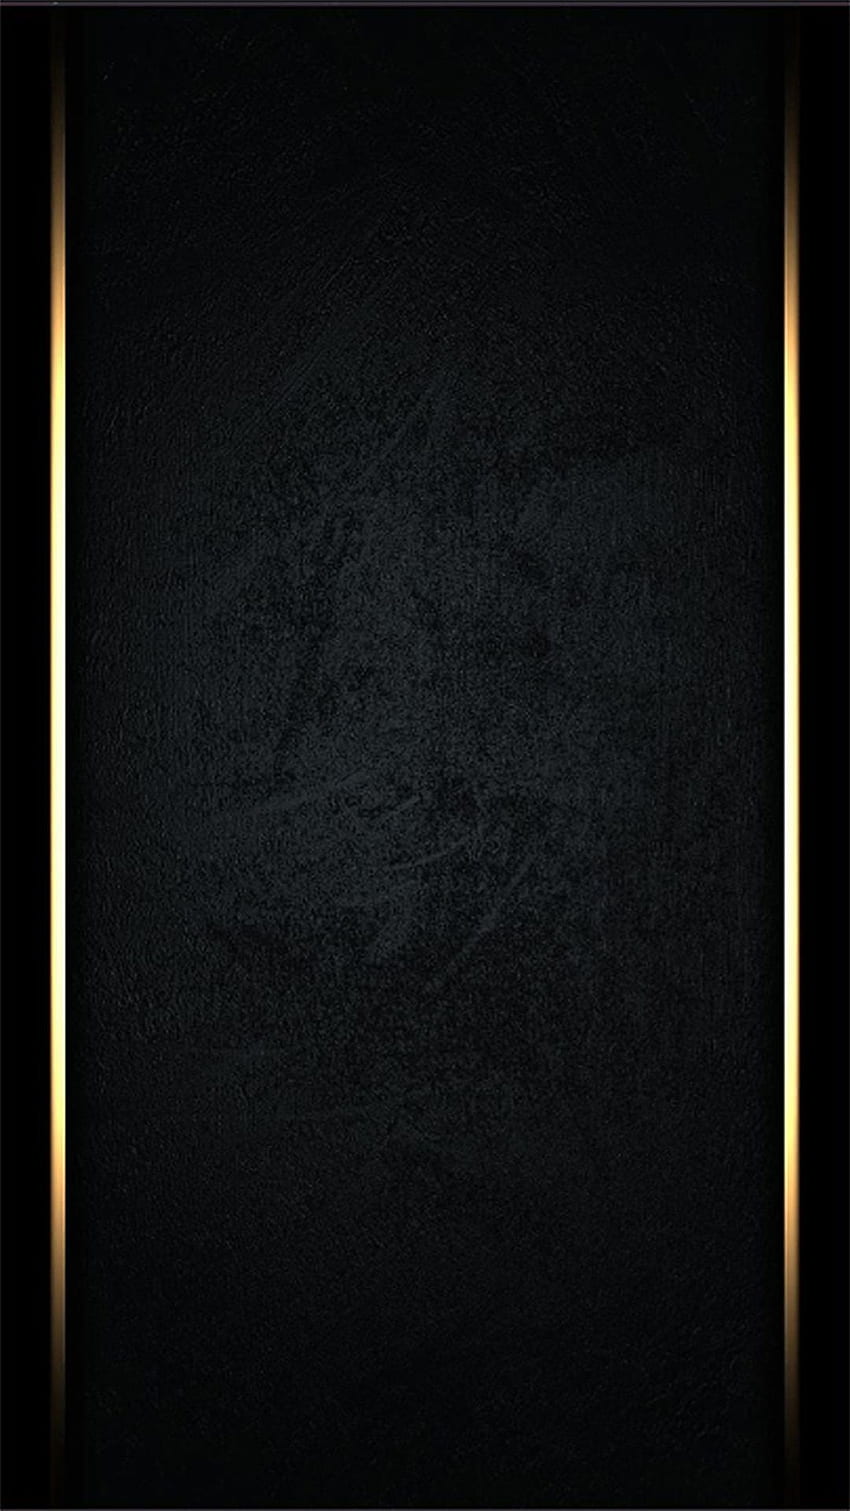 Nuevo El negro más hermoso para iPhone XR en 2020. negro, negro, dorado, negro absoluto fondo de pantalla del teléfono